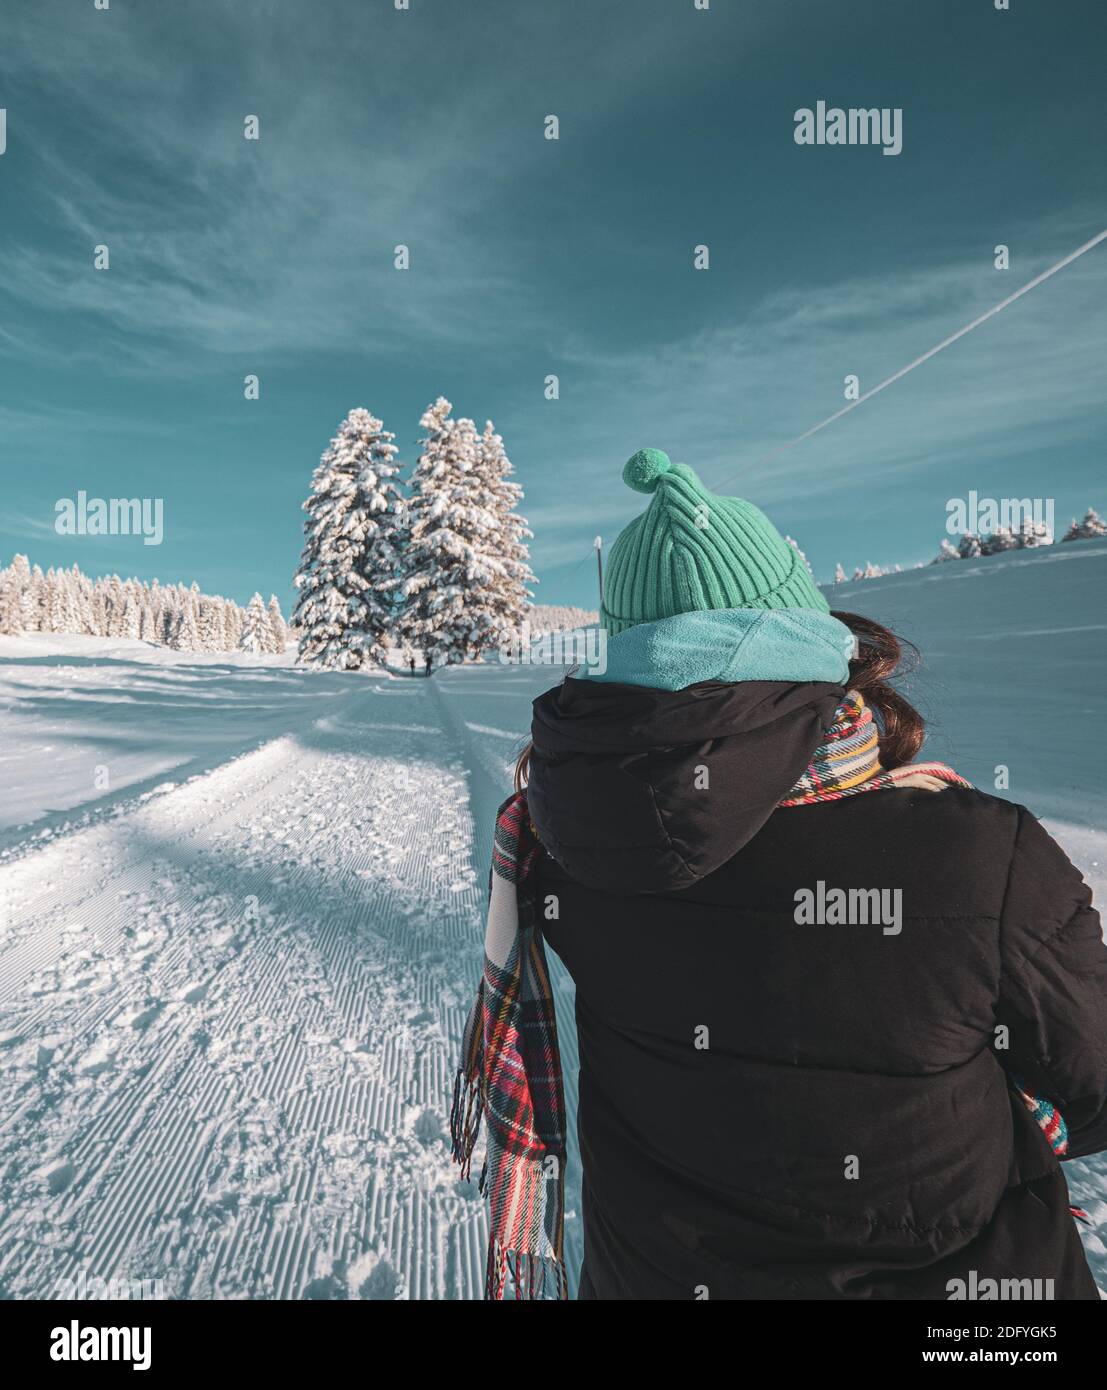 Primo piano di una donna adulta che indossa abiti caldi invernali camminando in un paesaggio invernale innevato di una foresta alpina coperta di neve fresca. Foto Stock